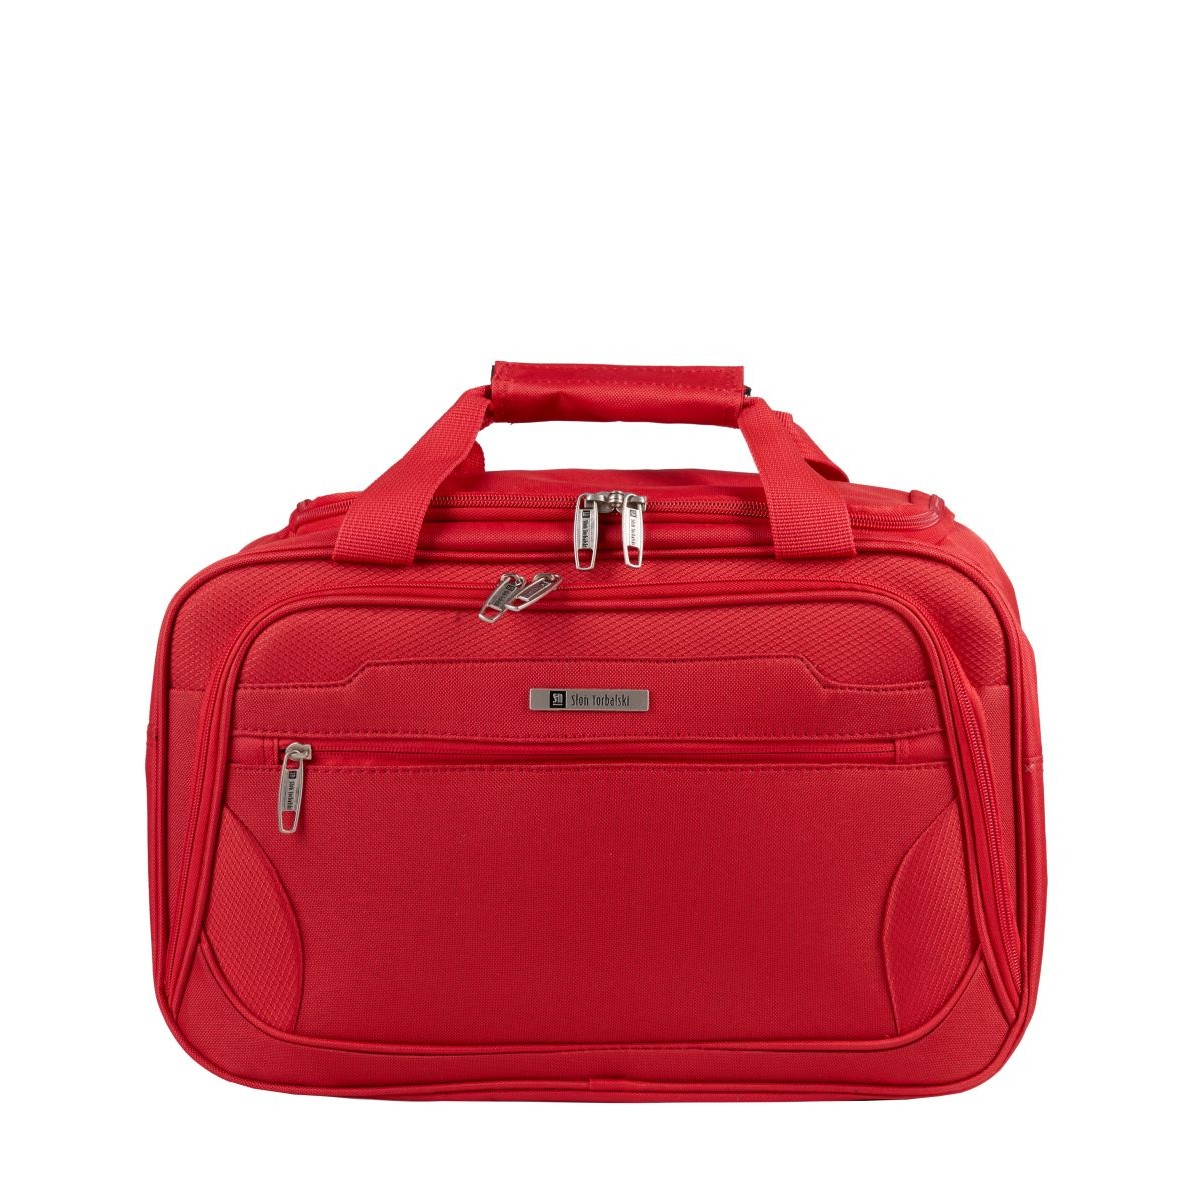 czerwona torba podróżna materiałowa bagaż podręczny 40x20x25cm